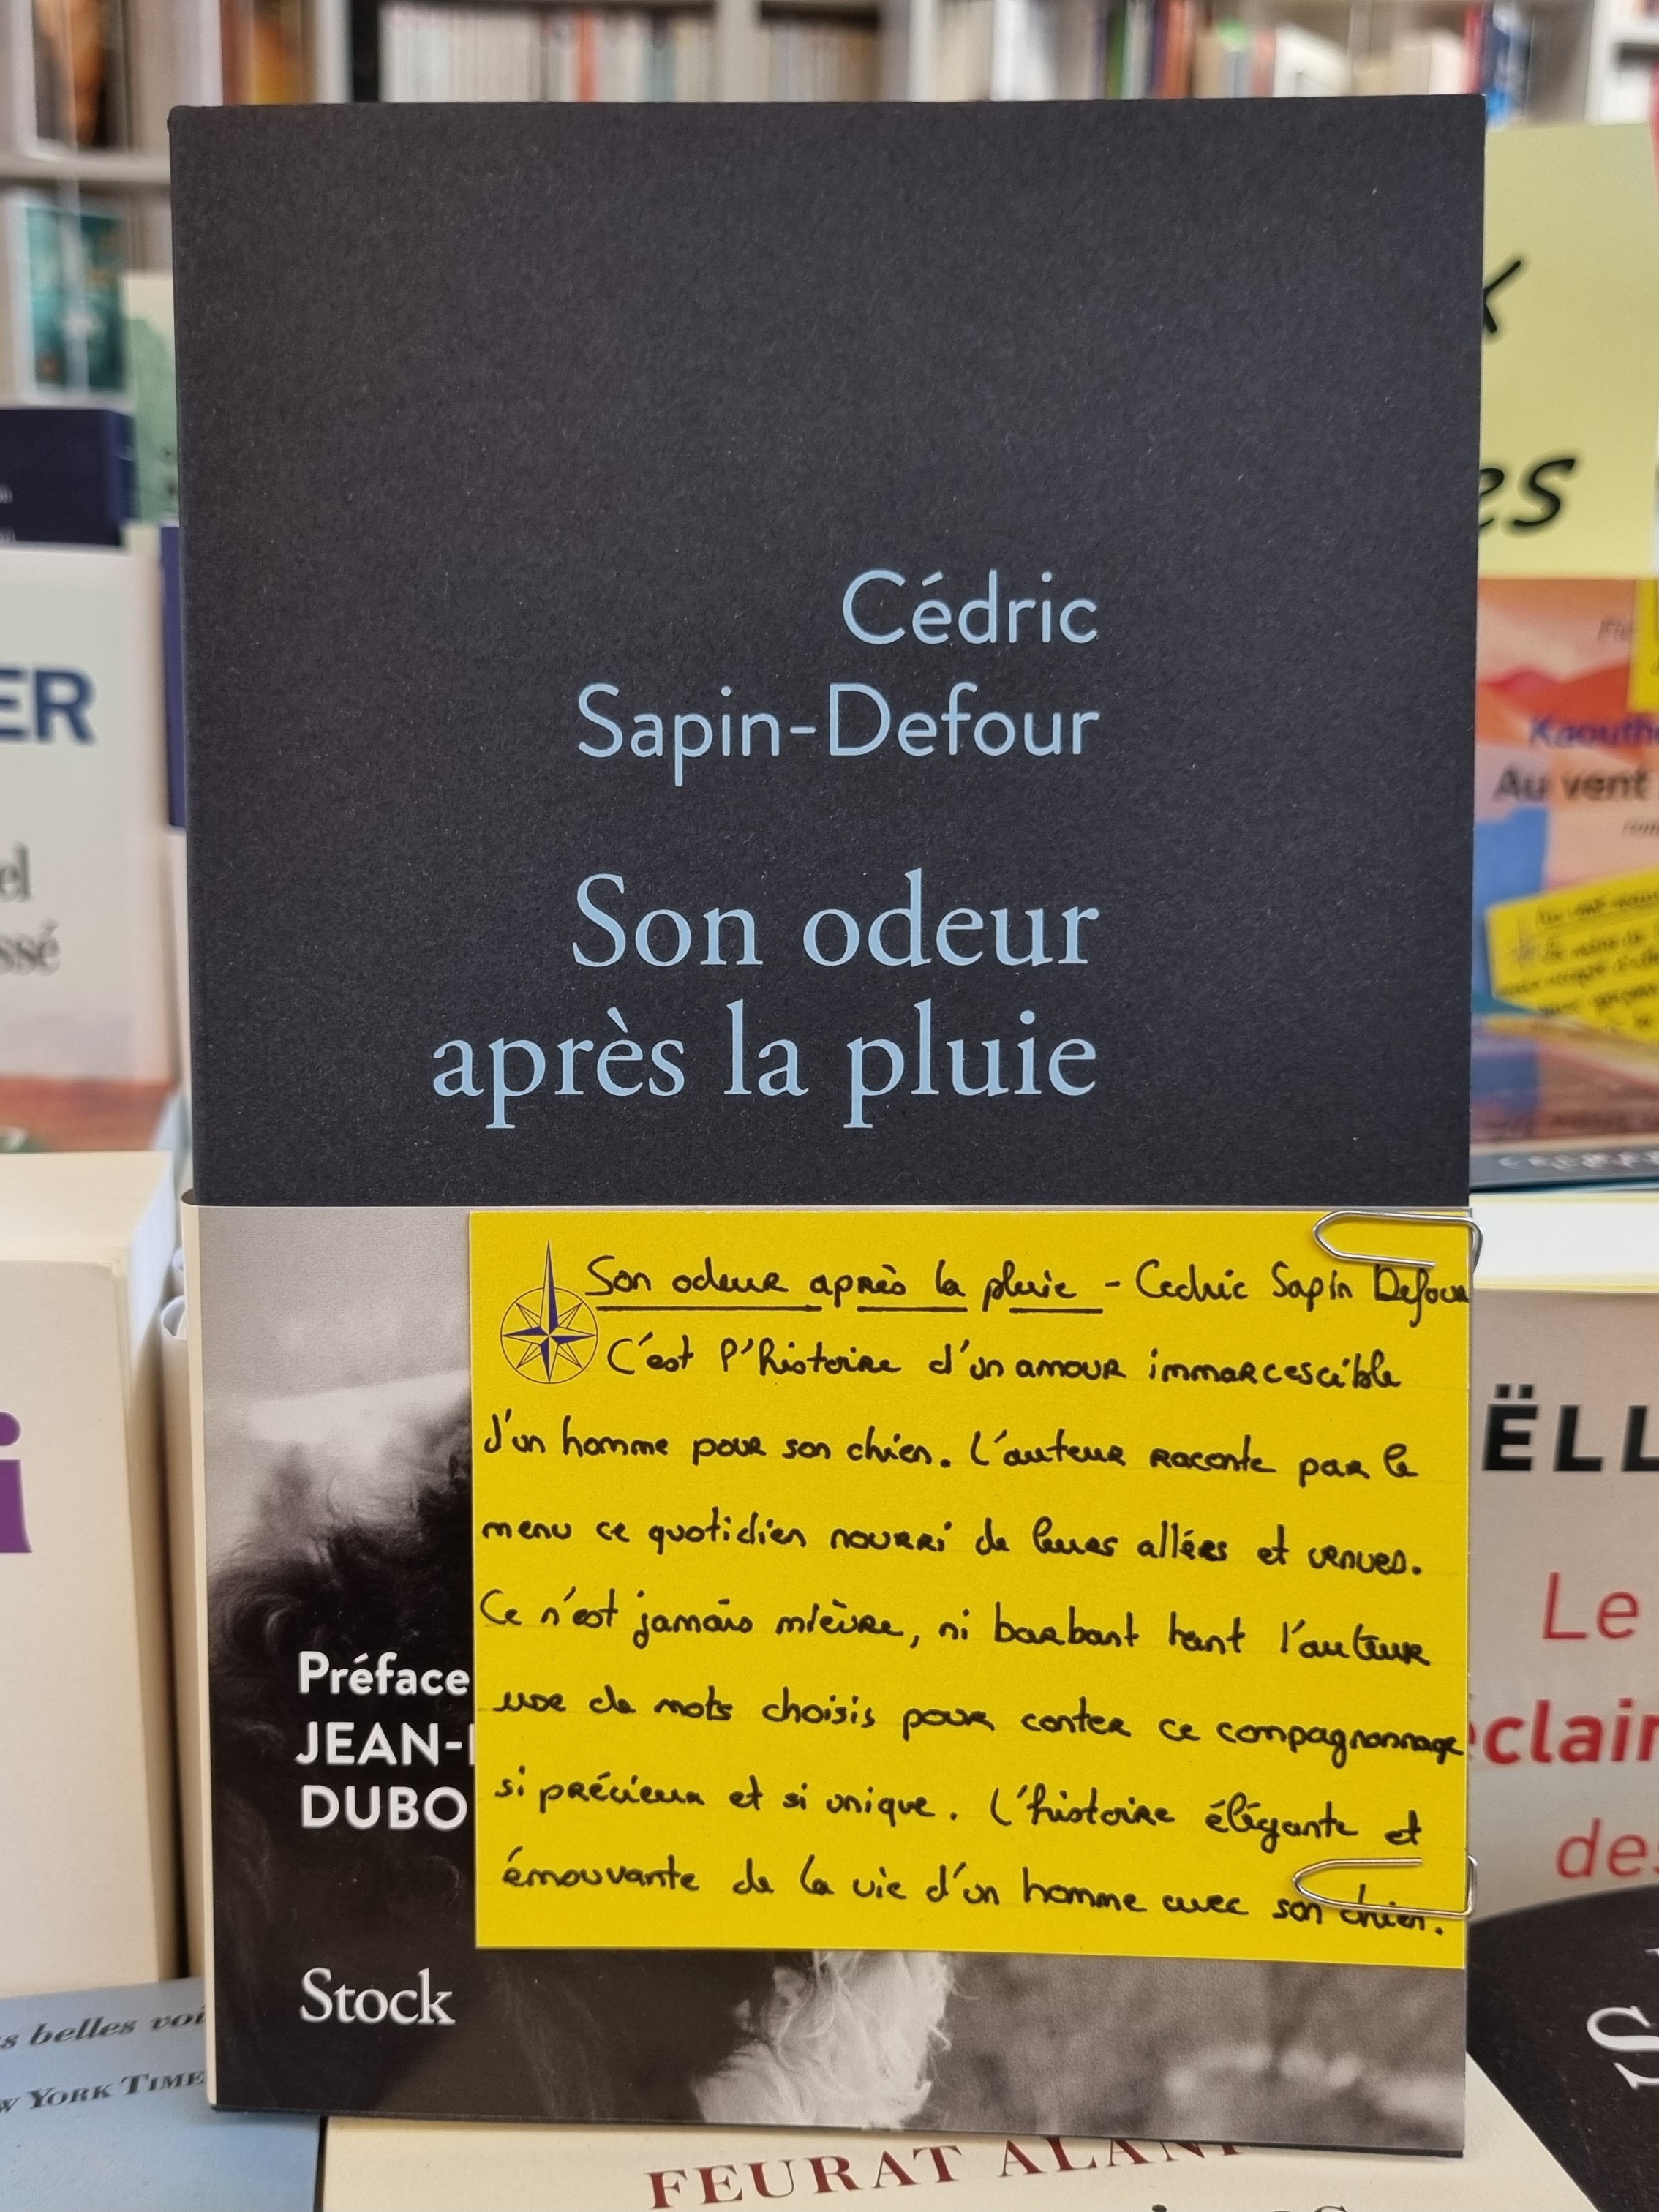 Son odeur après la pluie » de Cédric Sapin-Defour : une